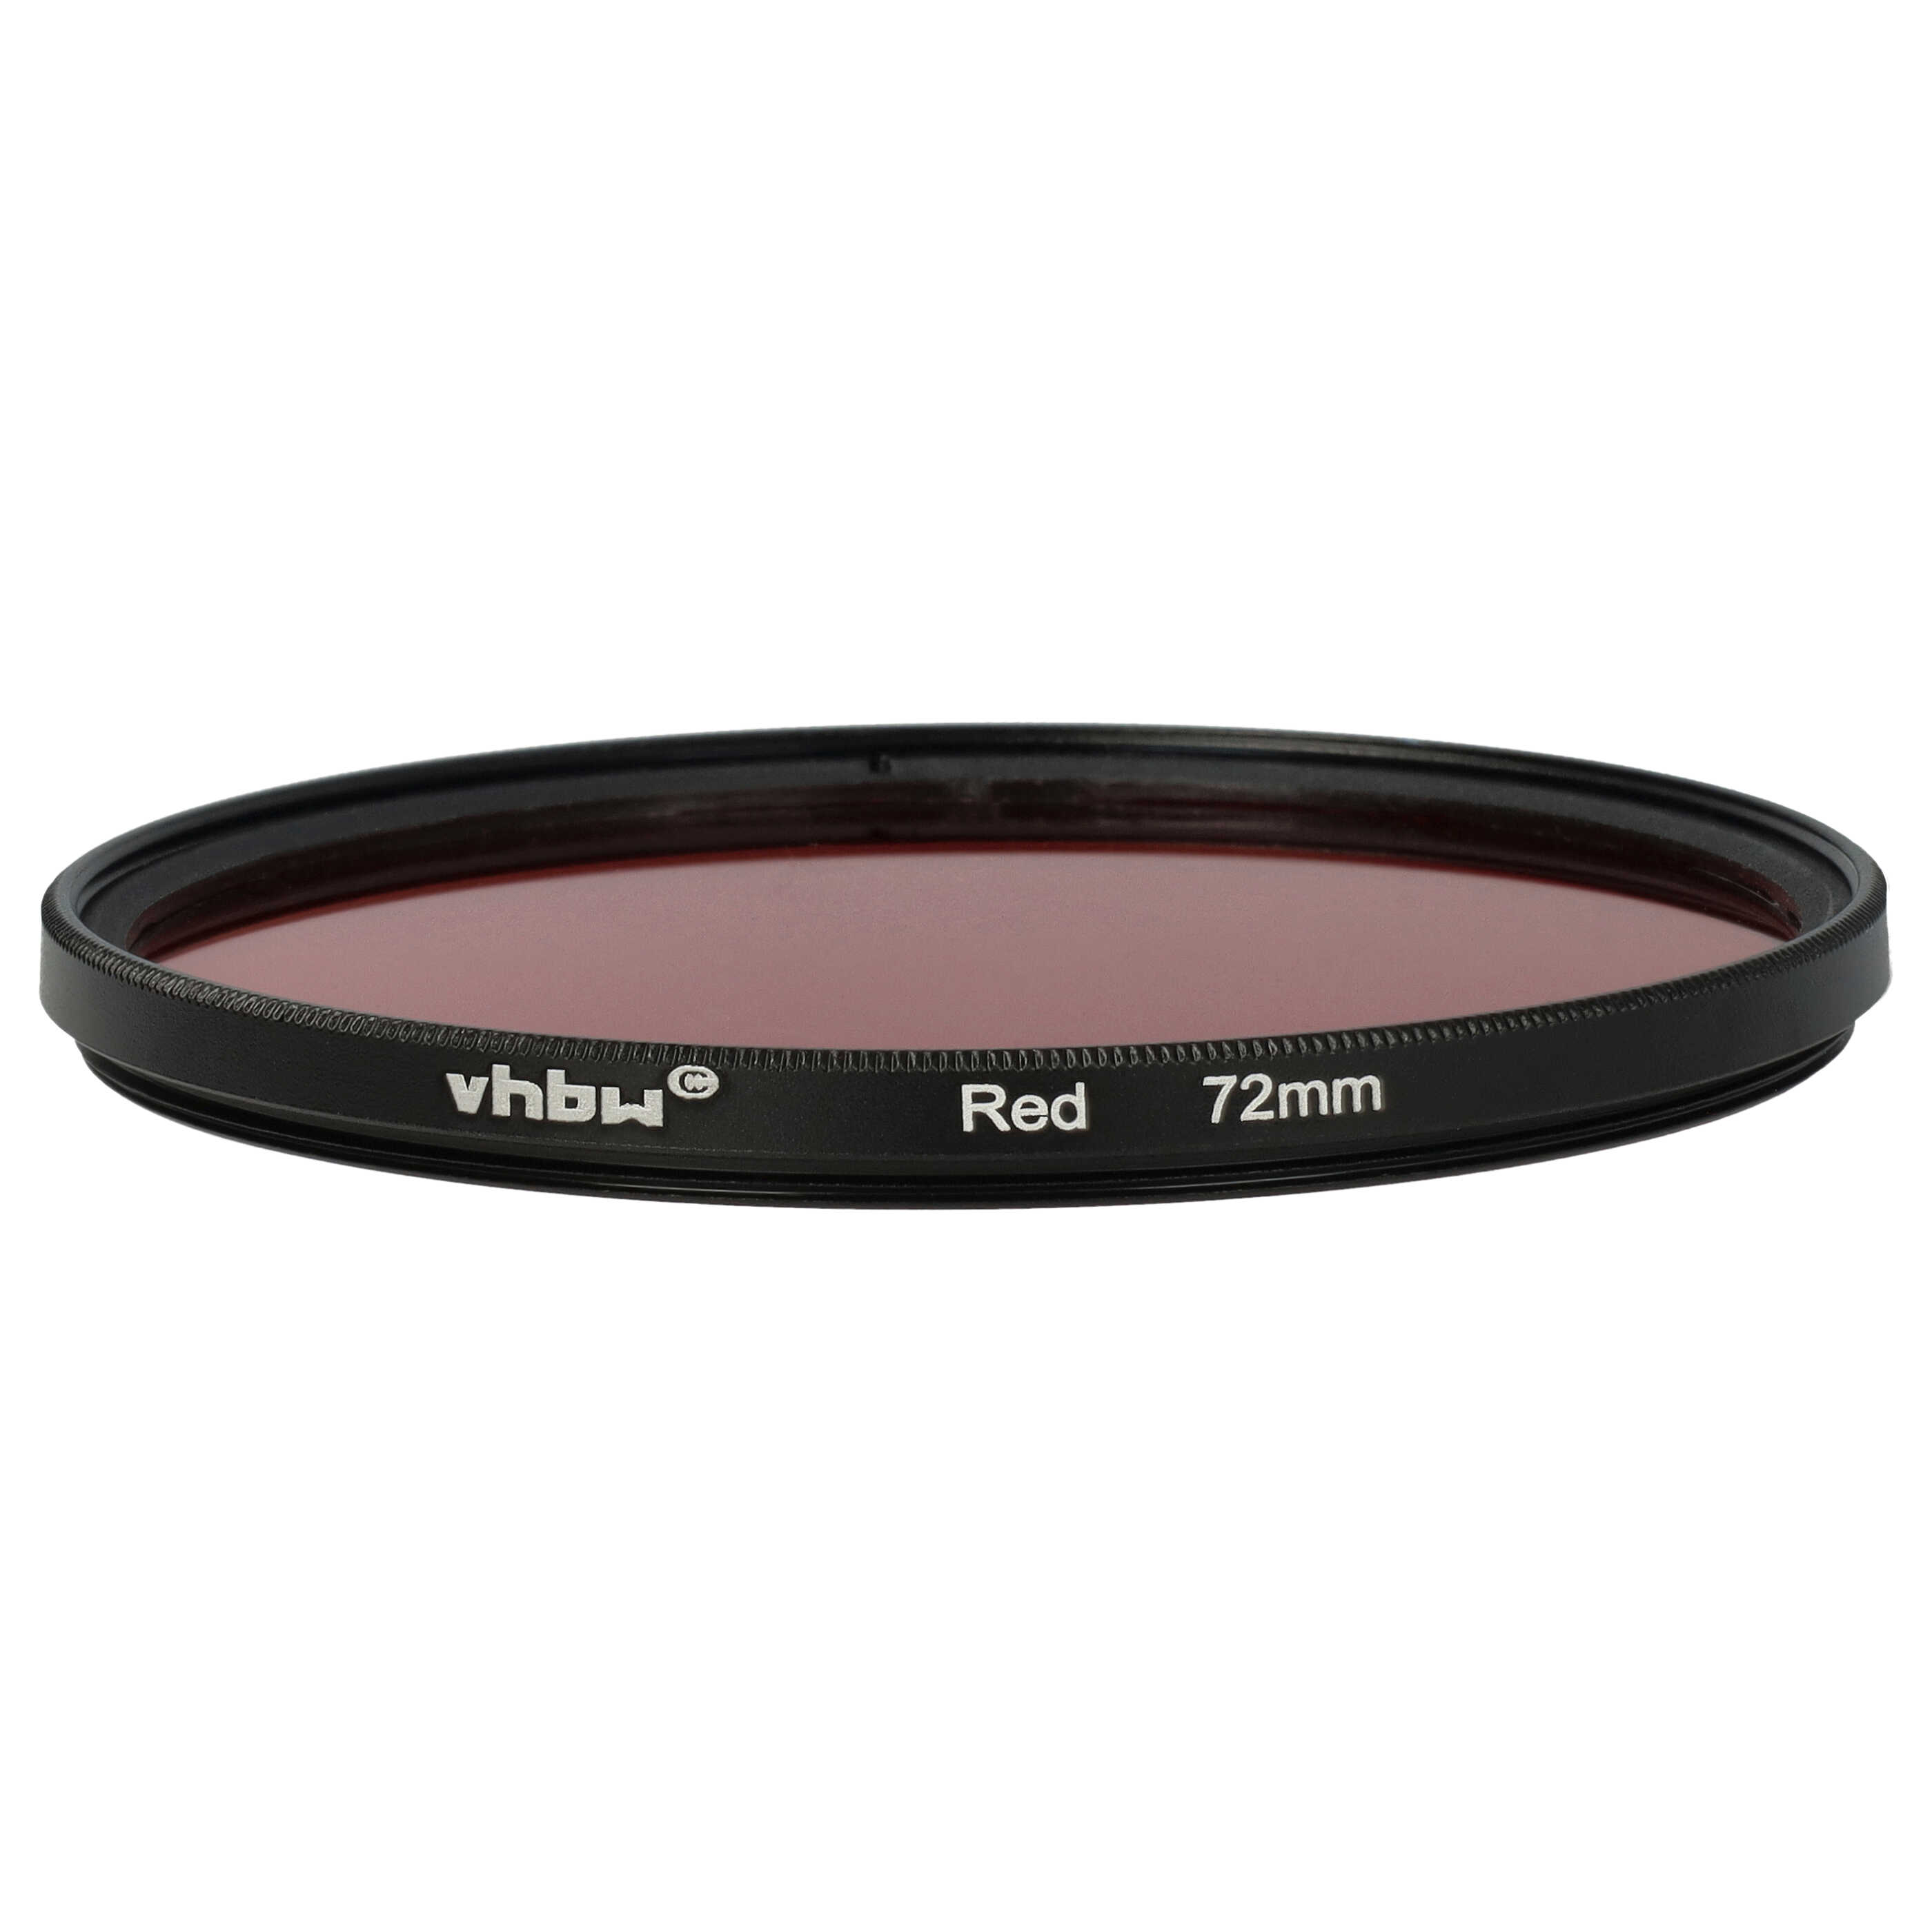 Farbfilter rot passend für Kamera Objektive mit 72 mm Filtergewinde - Rotfilter